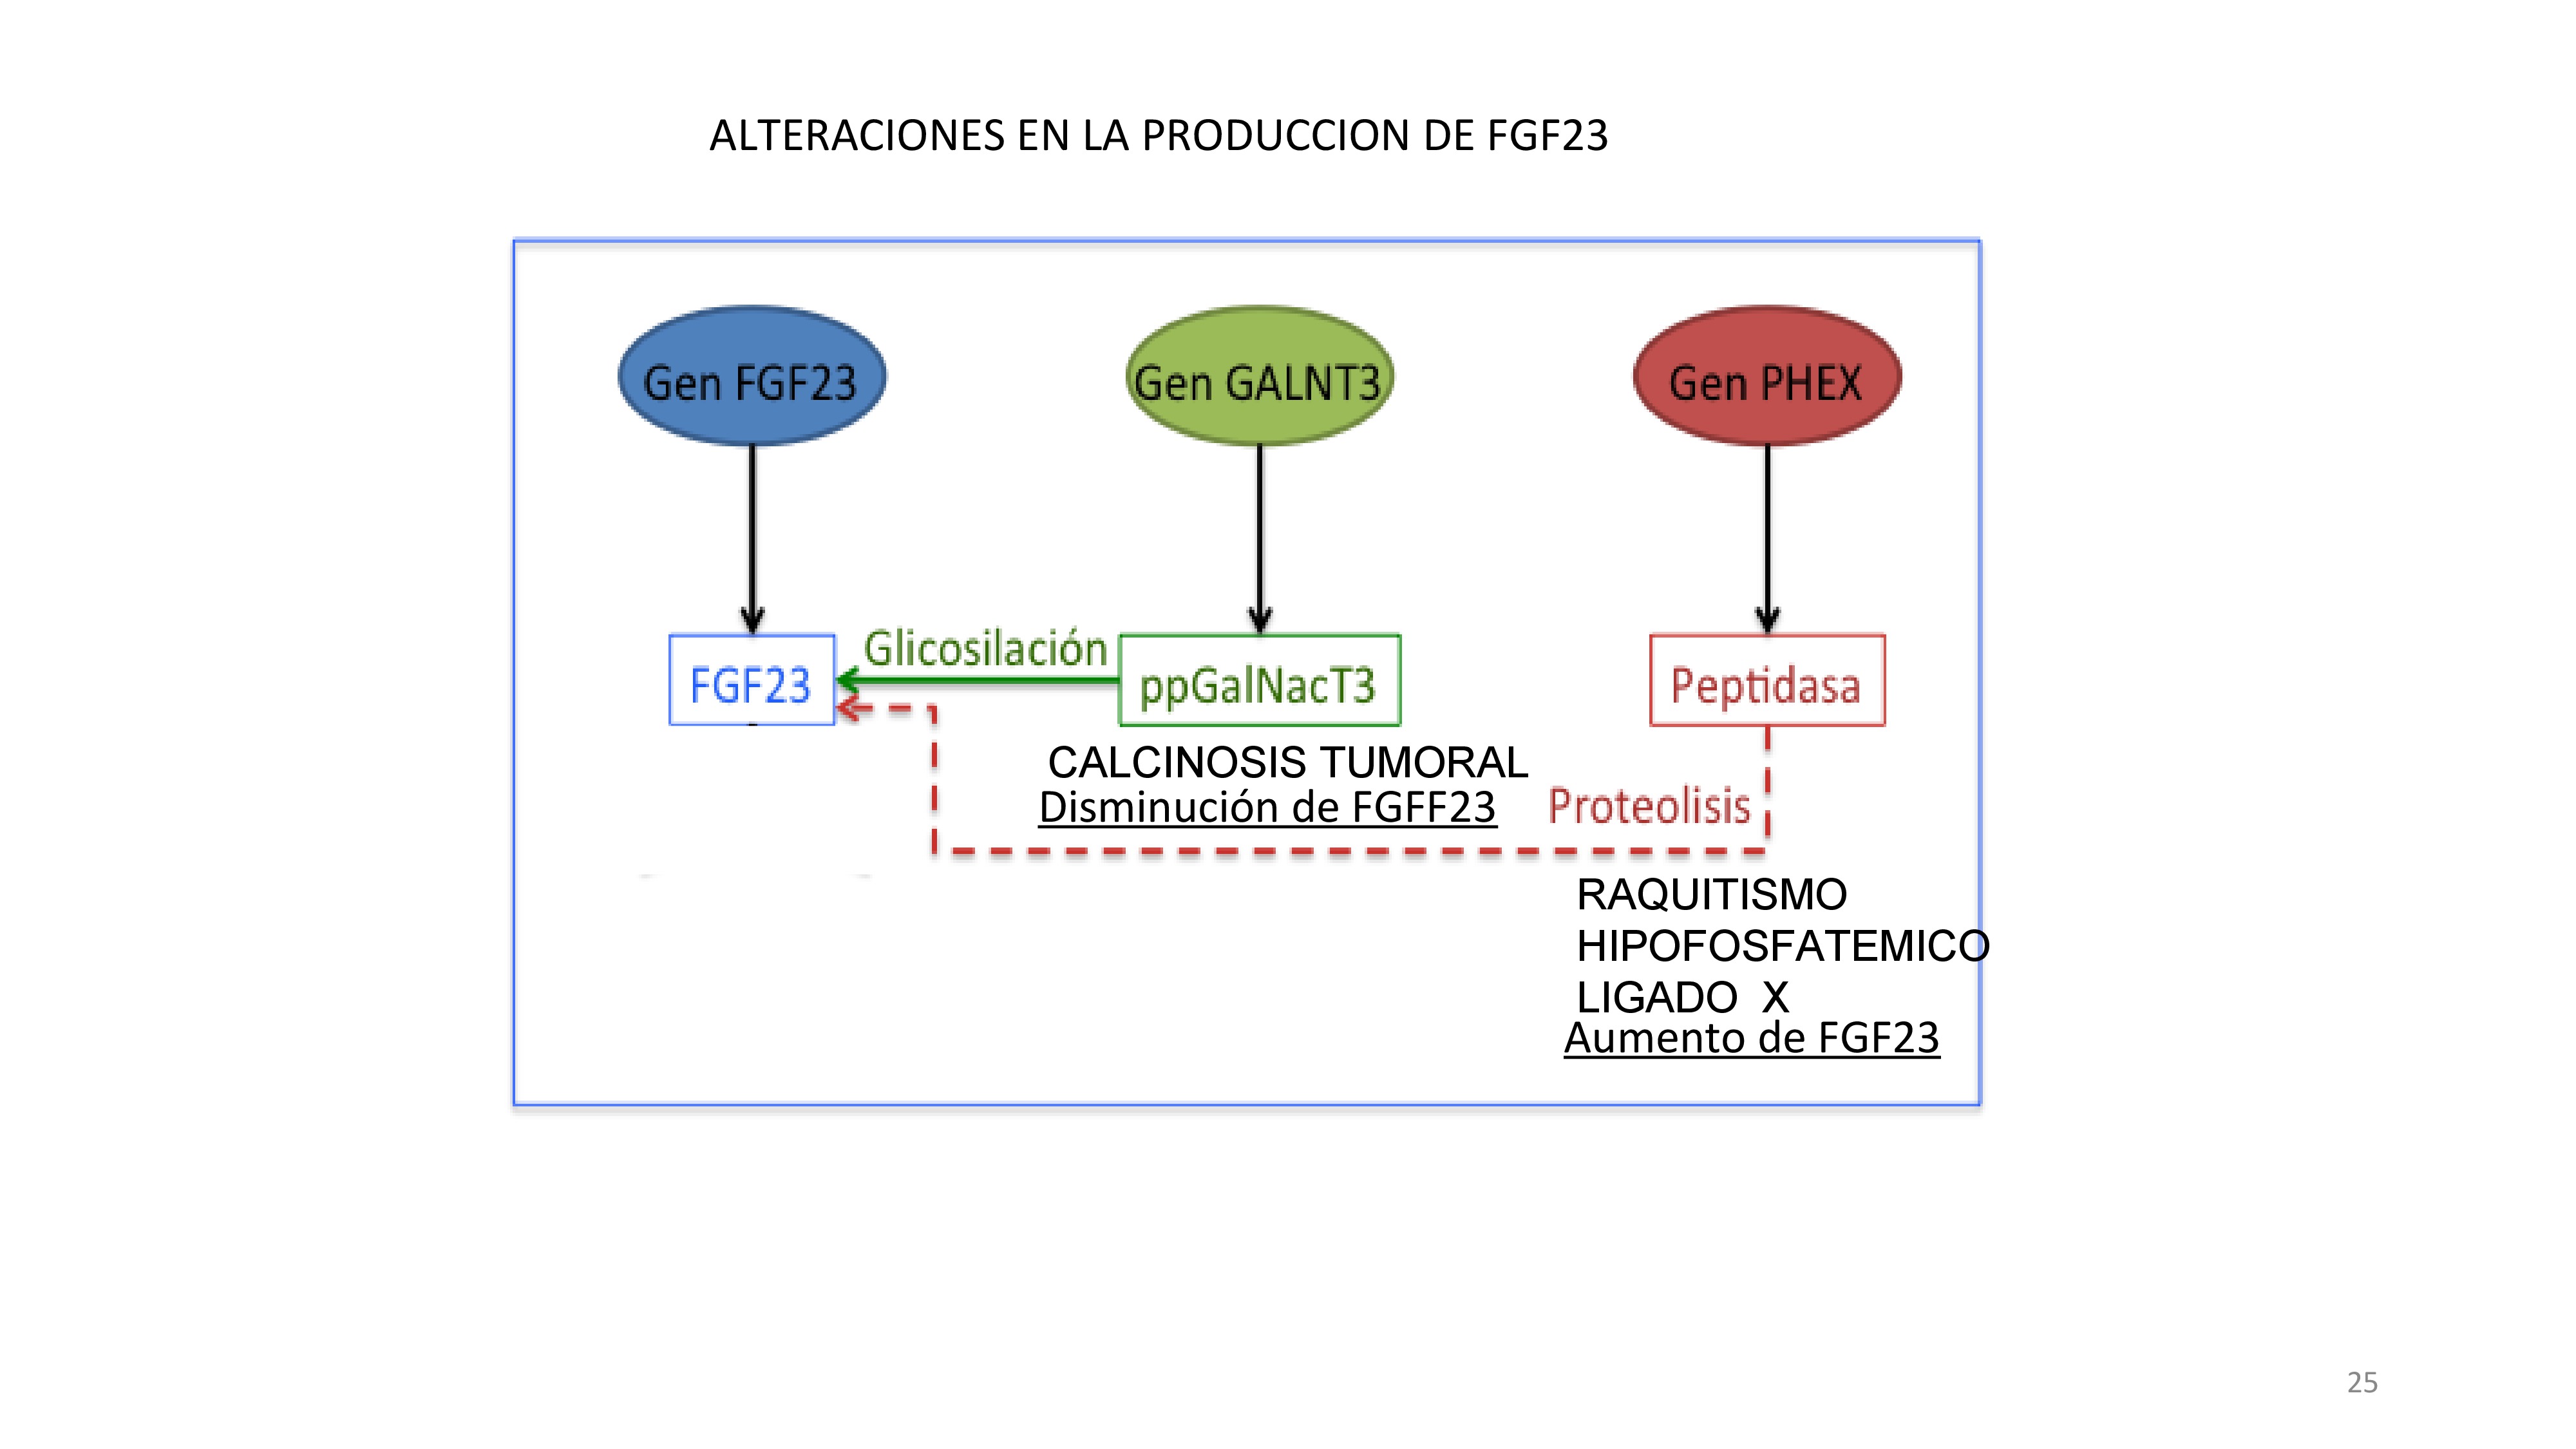 Esquema de defectos geneticos que producen alteraciones en los niveles de FGF23. El raquitismo hipofosfatemico es debido a un exceso de FGF23 porque hay un defecto del gen PHEX causando disminución de proteólisis del la molecula FGF23. La calcinosis tumoral es un defecto del gen GALNT3 con defecto glicoxilacion de FGF23 que hace que sea fácilmente fragmentada.